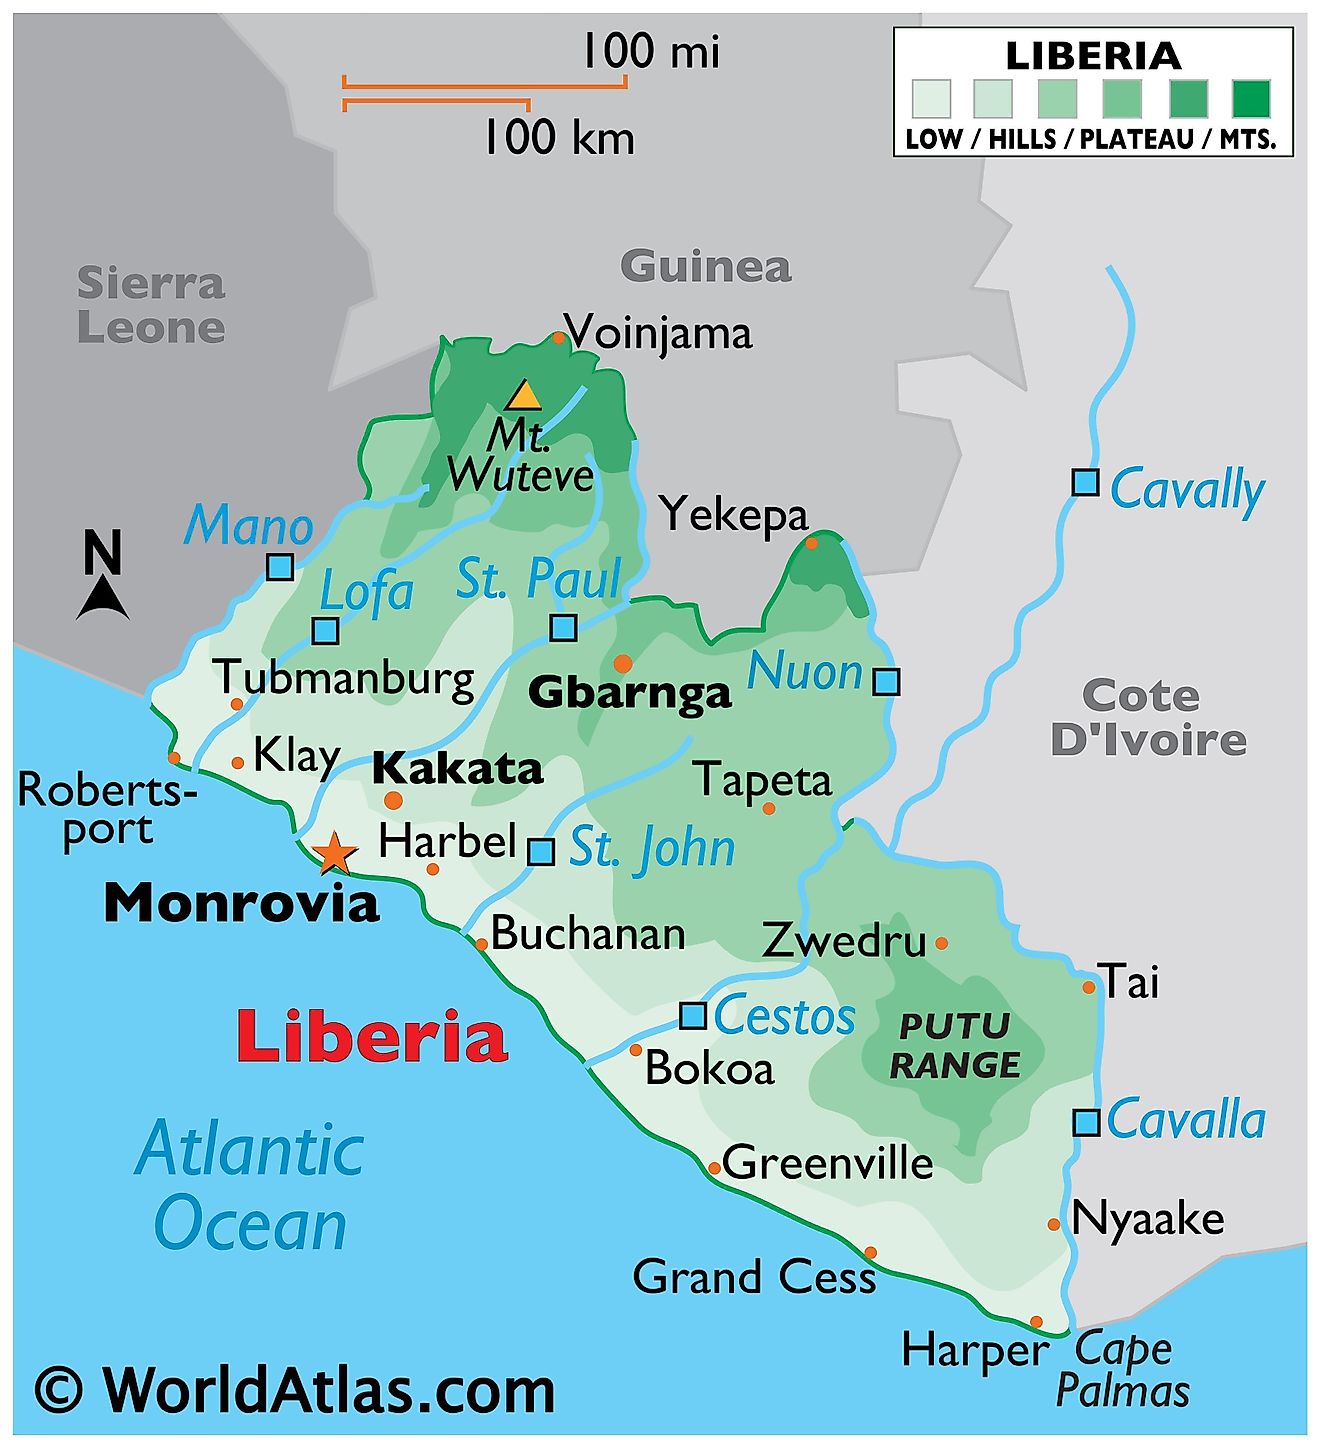 Mapa físico de Liberia que muestra los límites estatales, el relieve, los principales ríos, el monte Witeve y las principales ciudades.